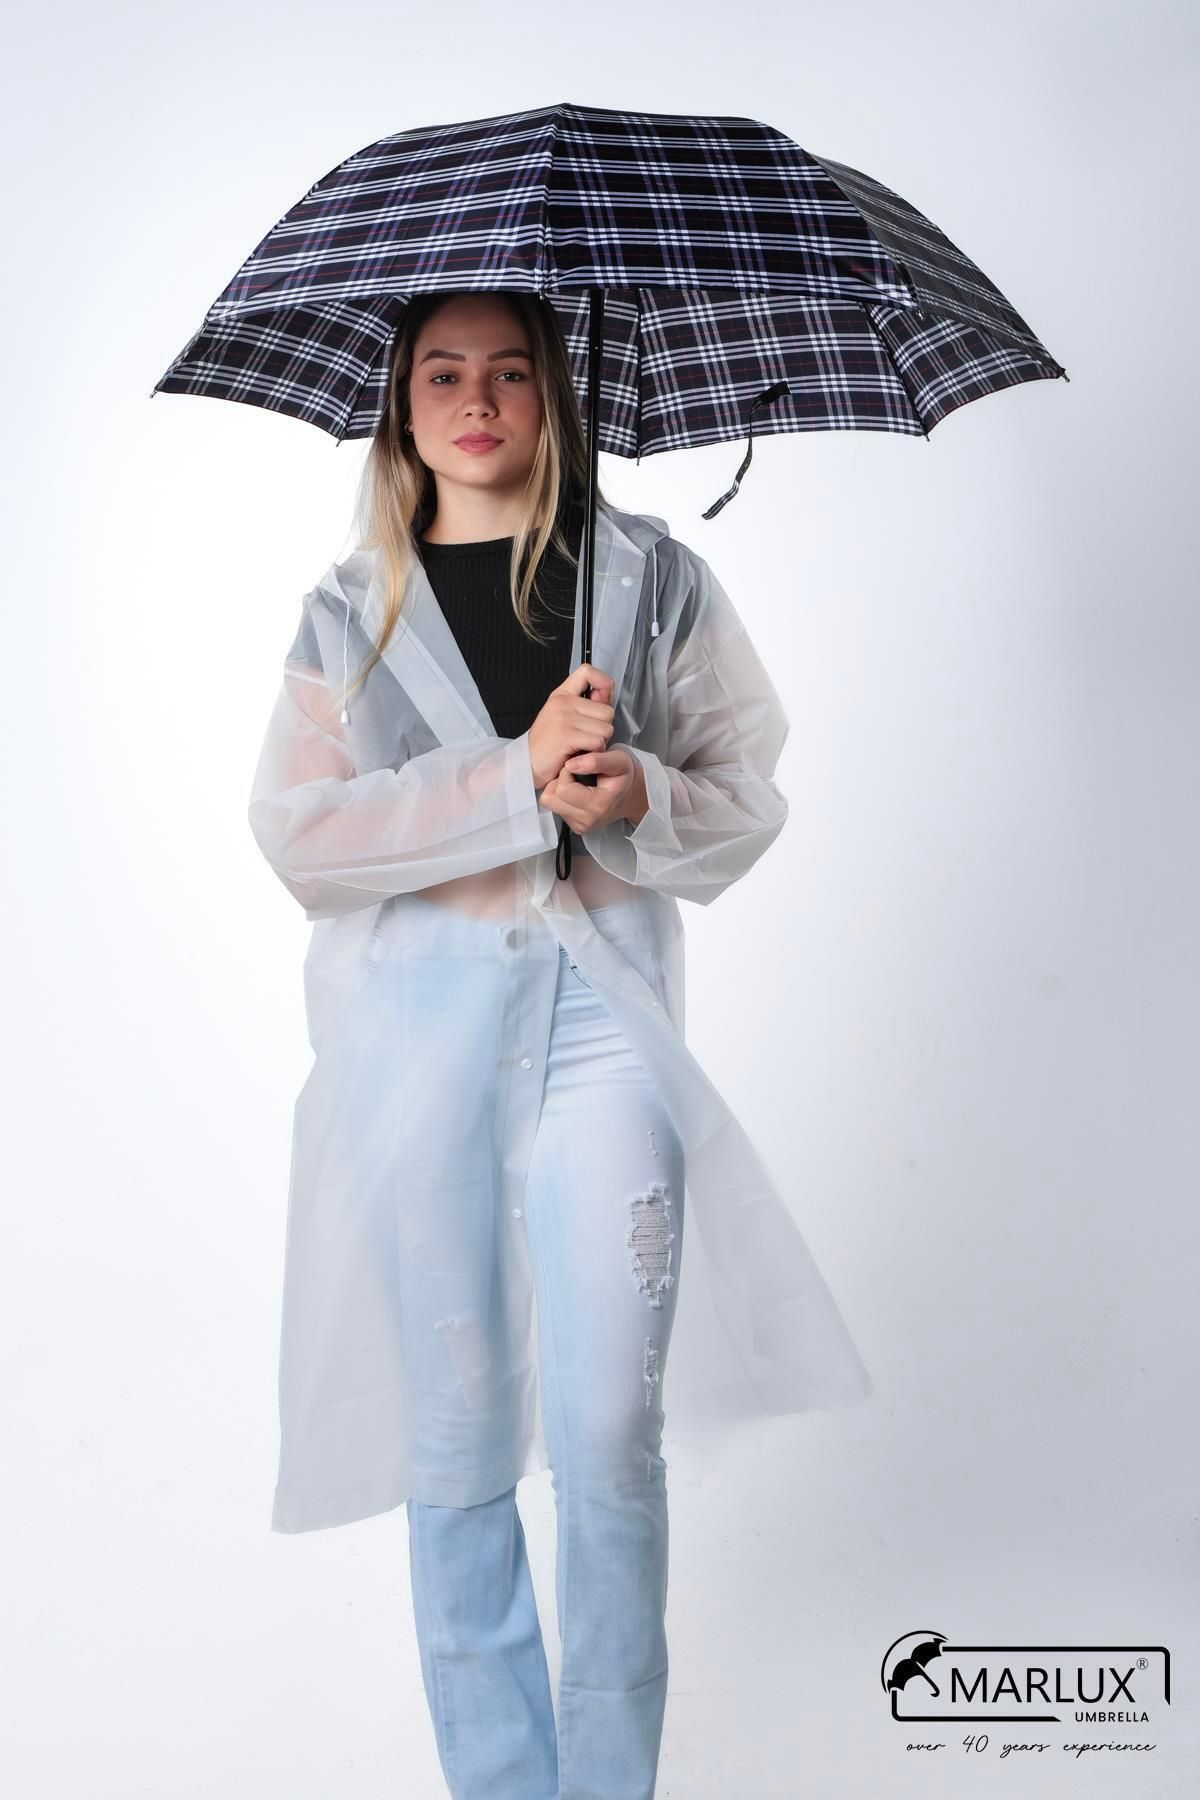 Marlux Lacivert Ekoseli Kadın Şemsiye M21mar358r003